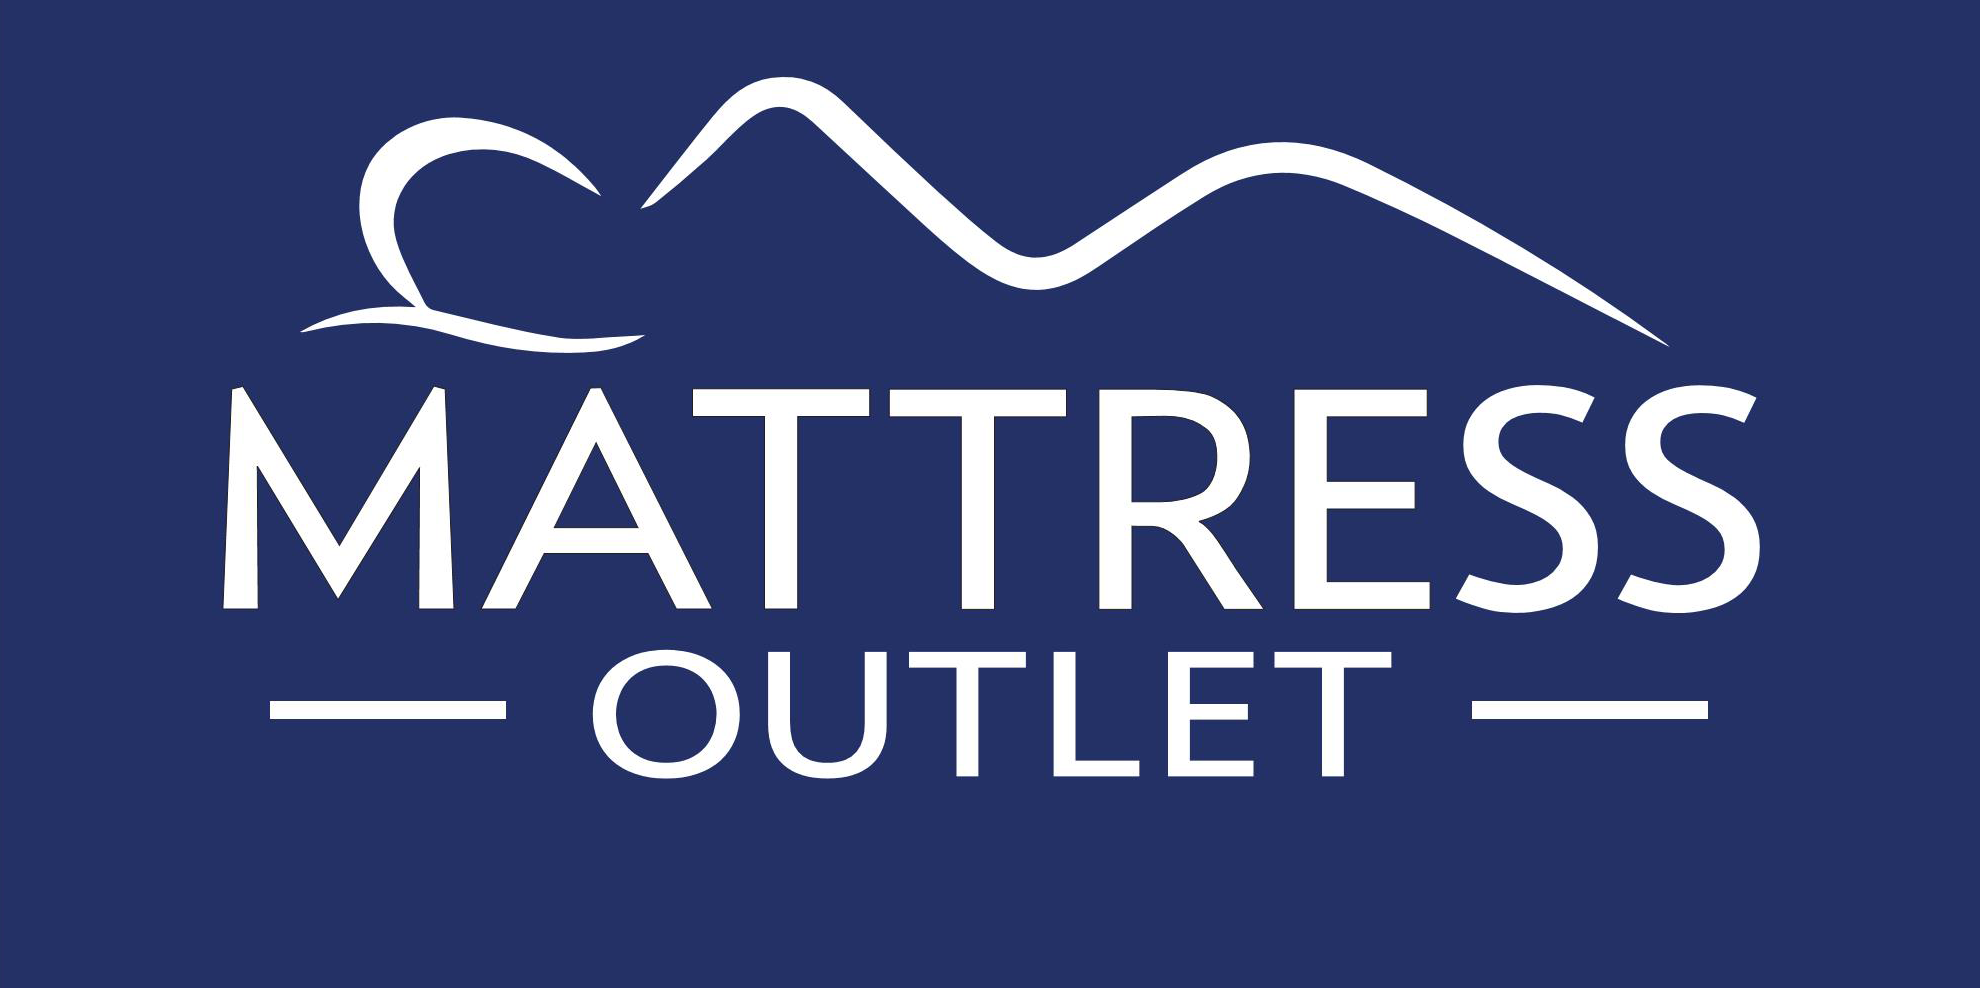 Mattress Outlet